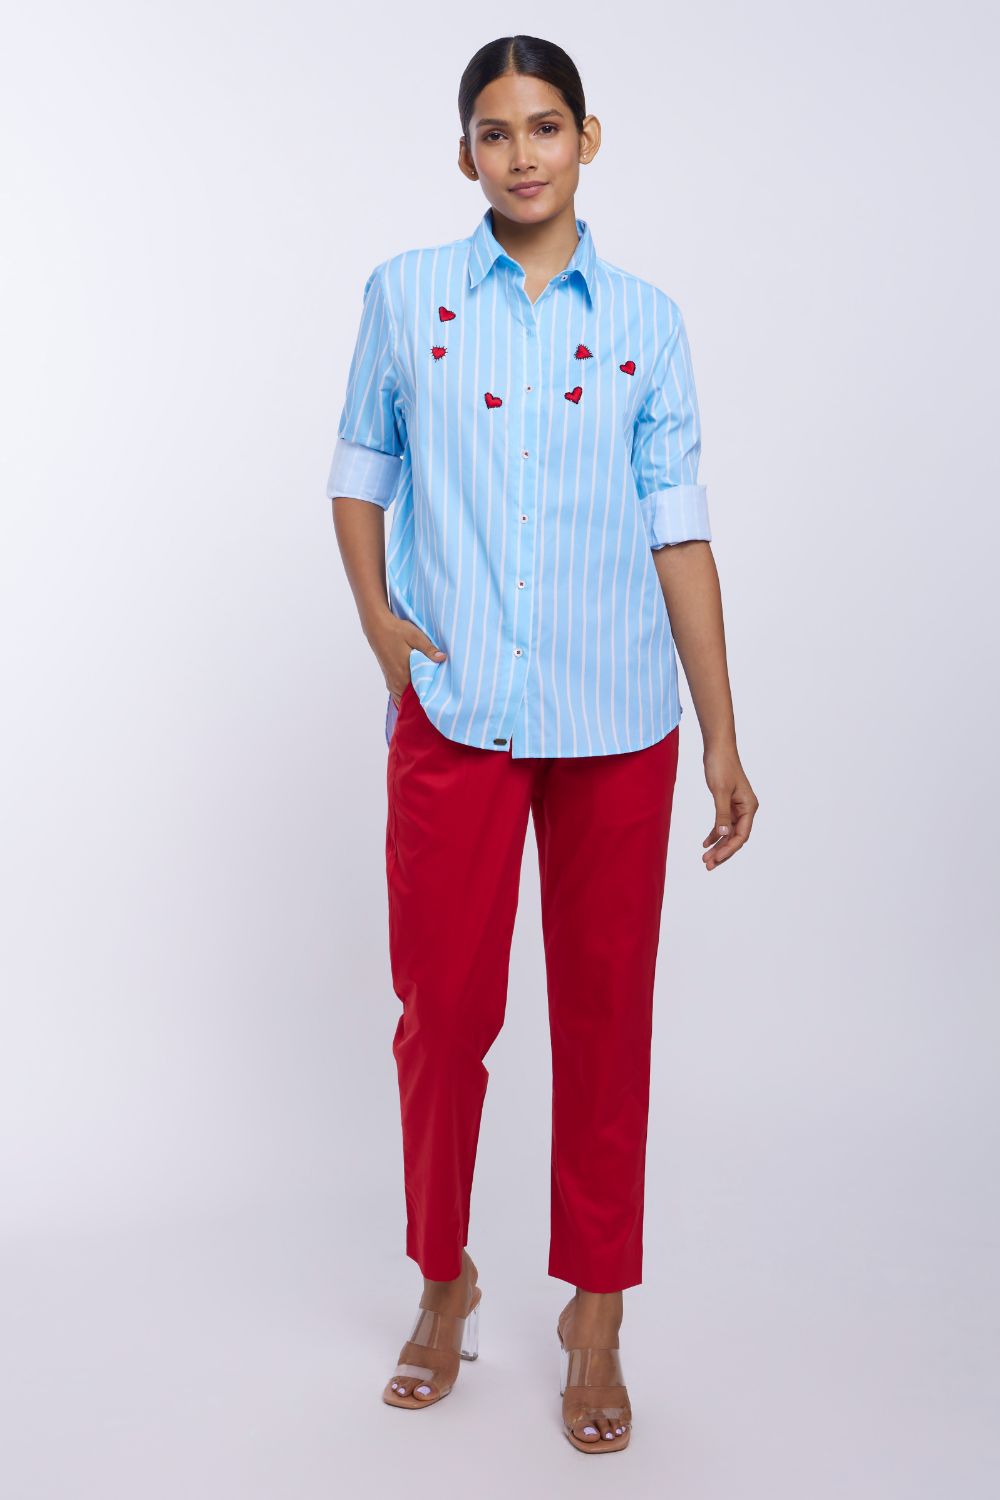 Blue Stripe Red Heart Shirt